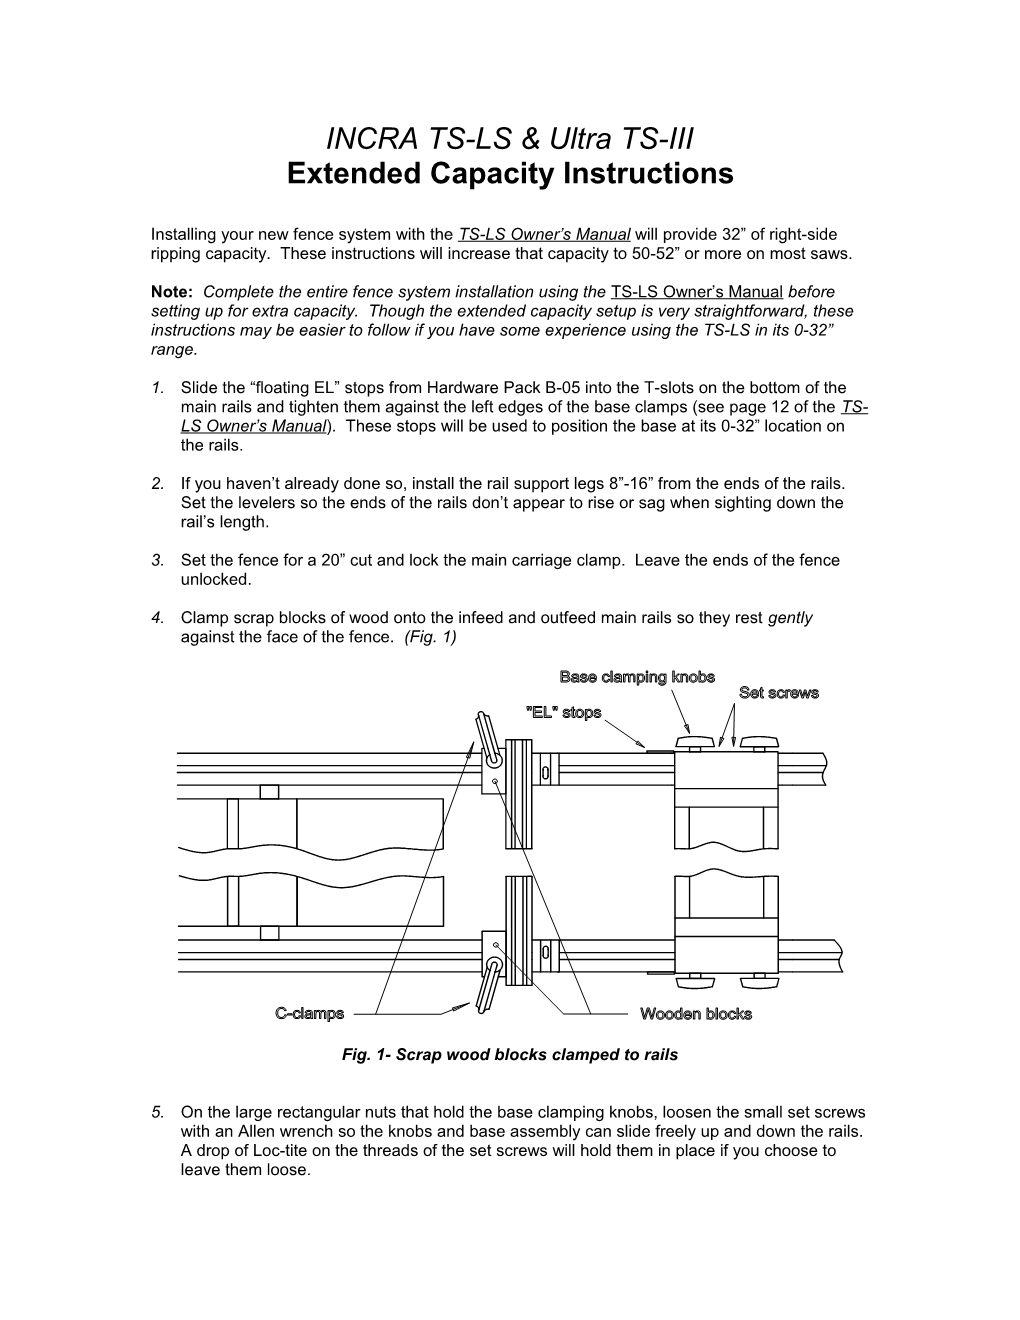 TSII 31 Capacity Instructions